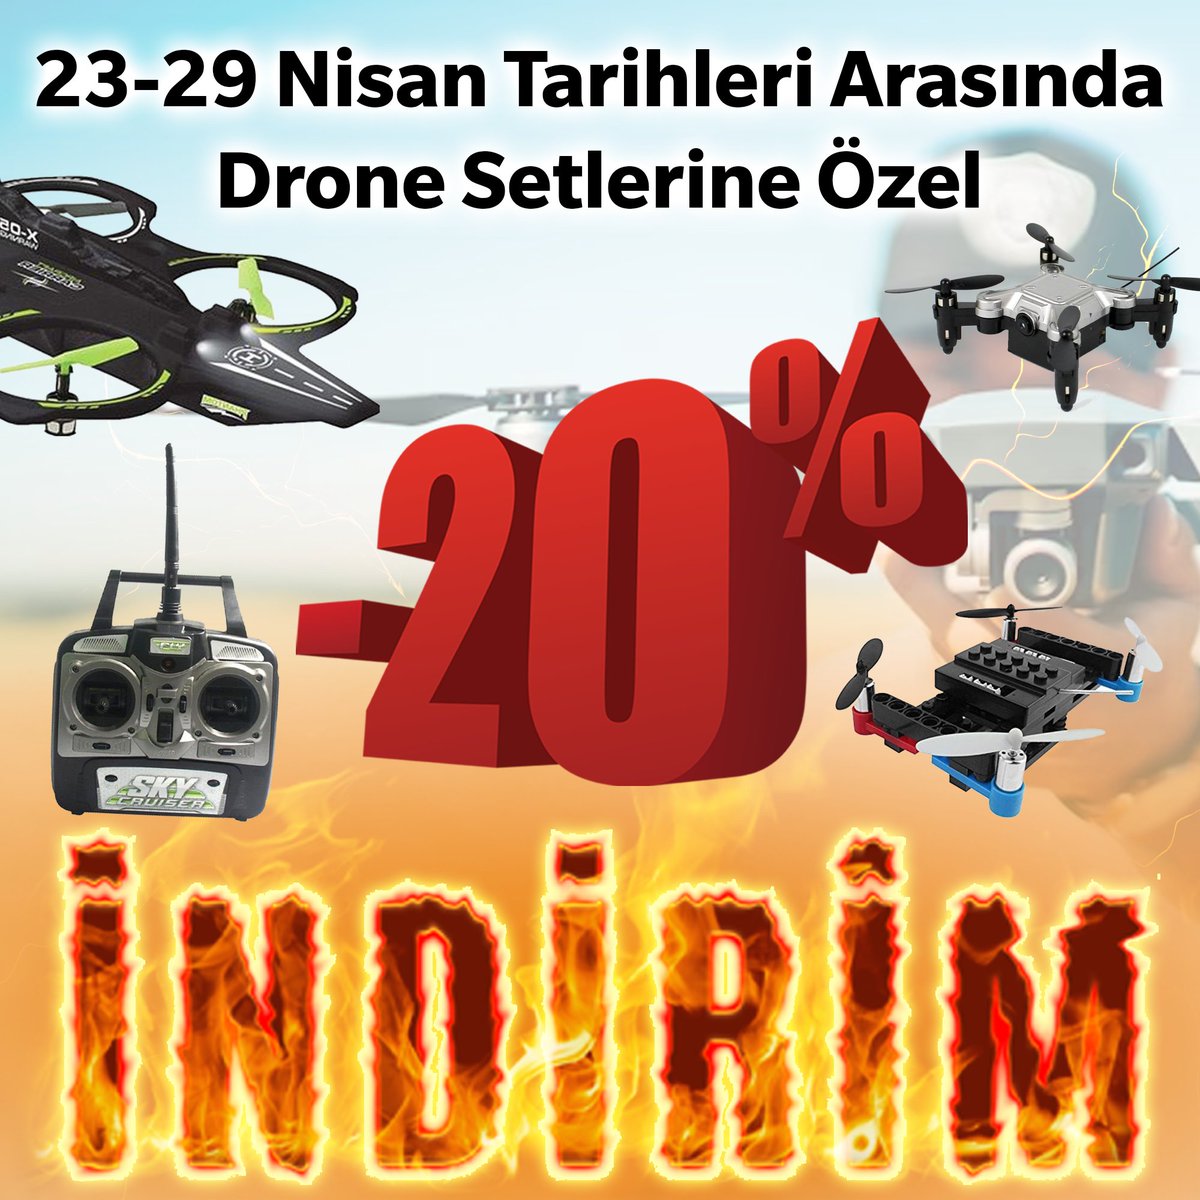 23 - 29 Nisan Tarihleri Arasında Drone Setlerine Özel %20 İNDİRİM sizleri bekliyor.

hobbytime.com.tr/kategori/drone…

#drone #indirim #hobbytime